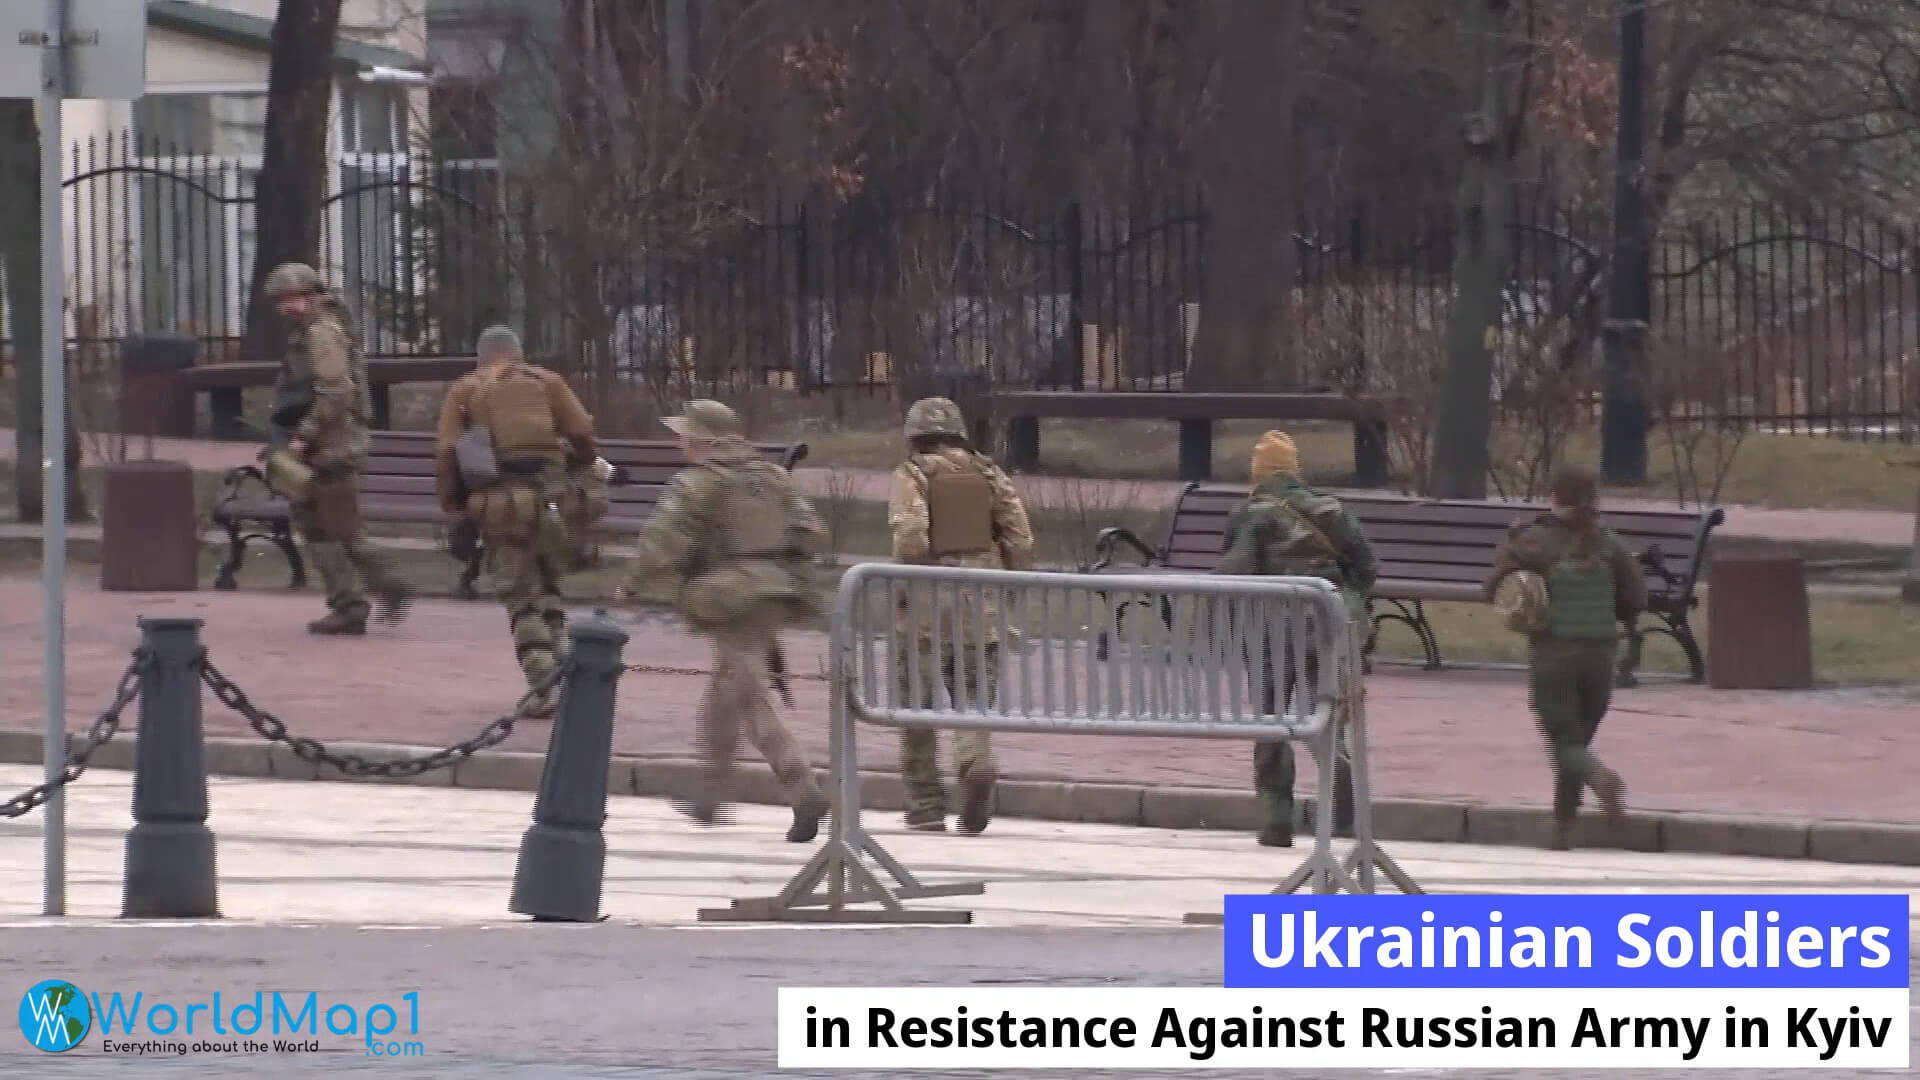 Ukraine Soldiers in Resistance